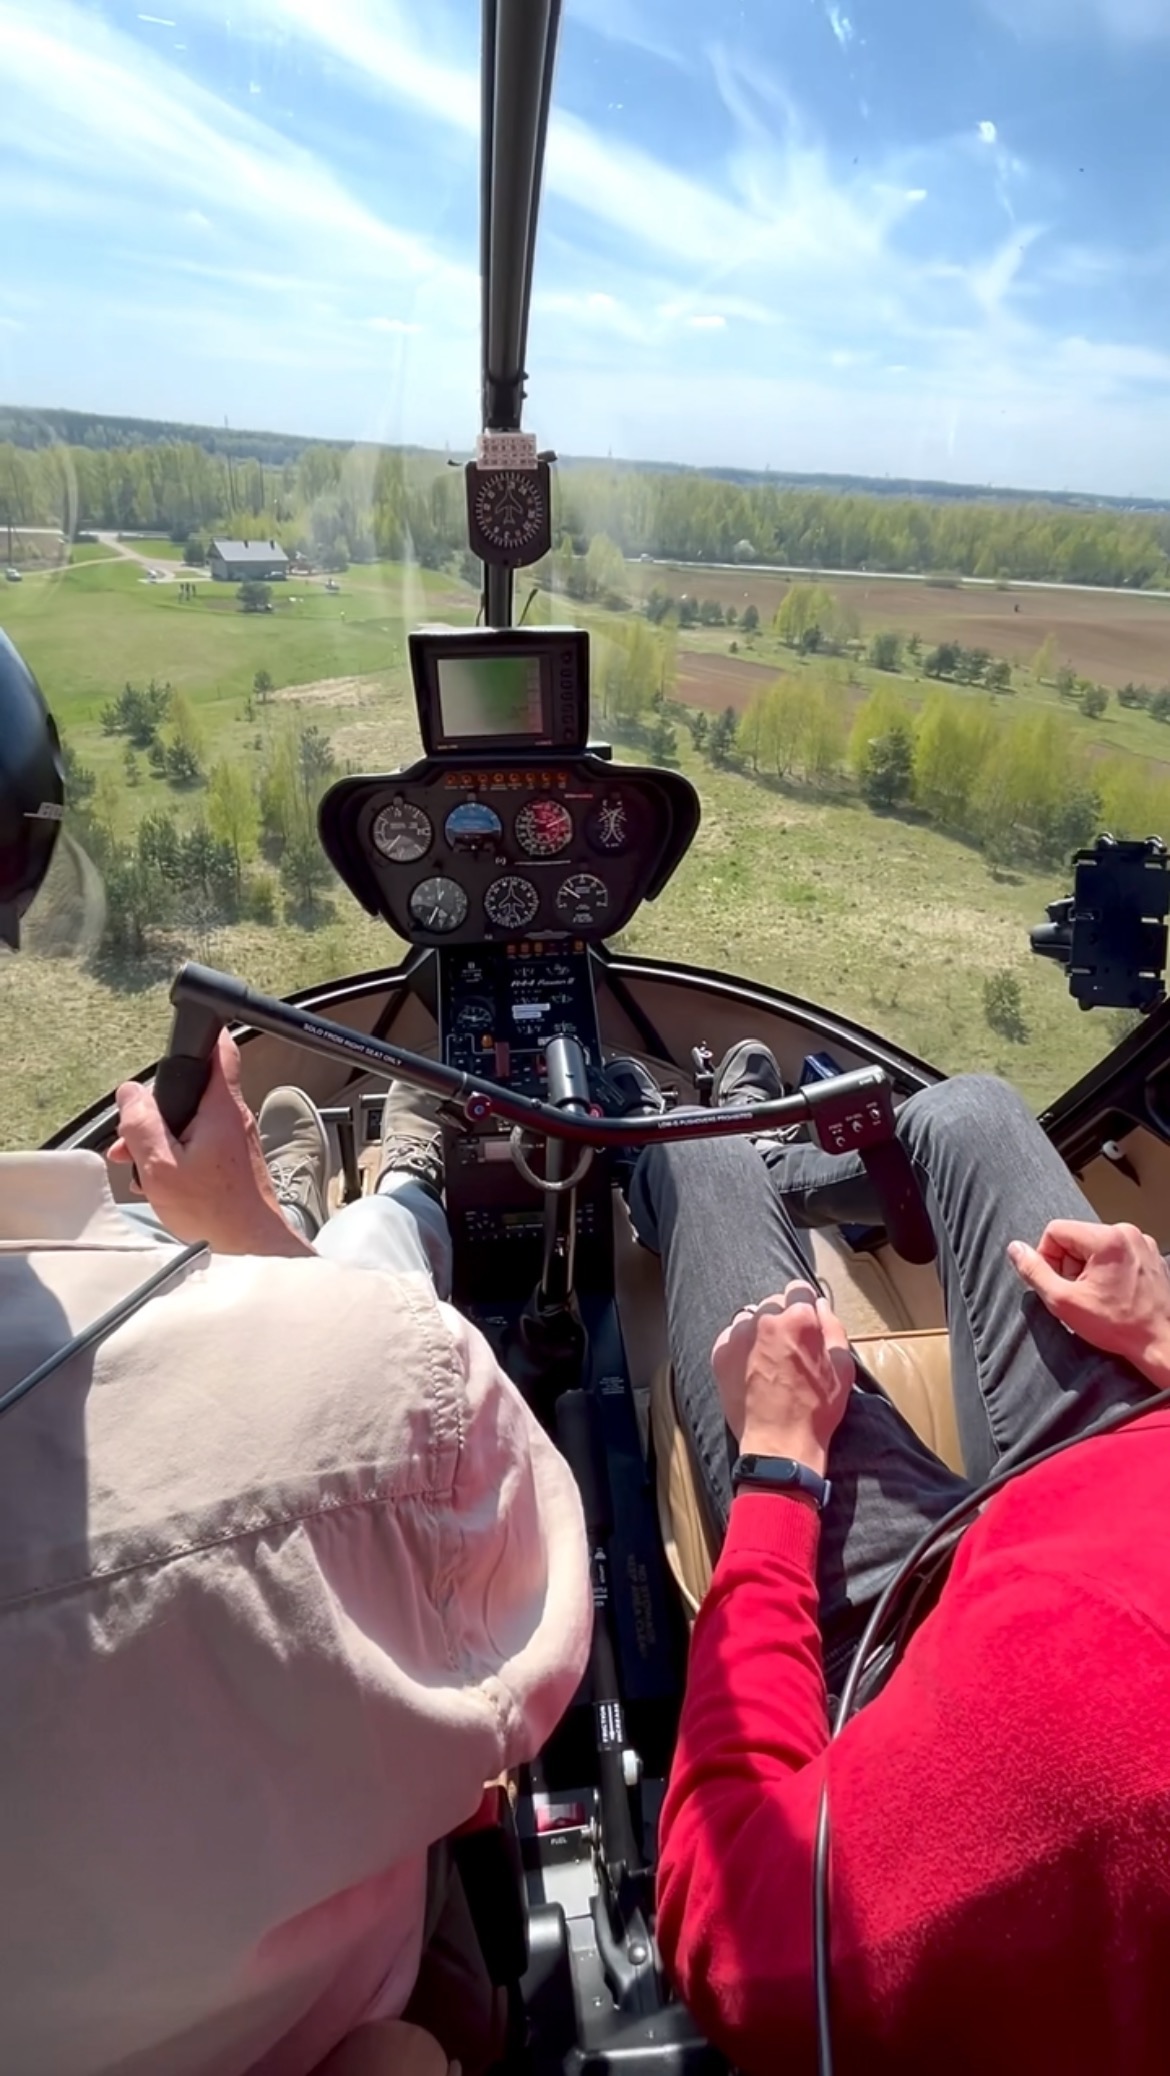 Susipažinkite su Robinson R44 ir R22 sraigtasparnių skrydžio ypatumais ir galimybėmis. Pamėginkite patys pilotuoti sraigtasparnį ir patirkite nuostabų skrydžio jausmą! Užsakyk ĮVADINĘ PAMOKĄ dabar! 
.
#trakai #sraigtasparnis #helicopter #r44 #summer #vasara #pilotas #lietuva #lithuania #vacation #flight #gift #dovana #dovanuidejos